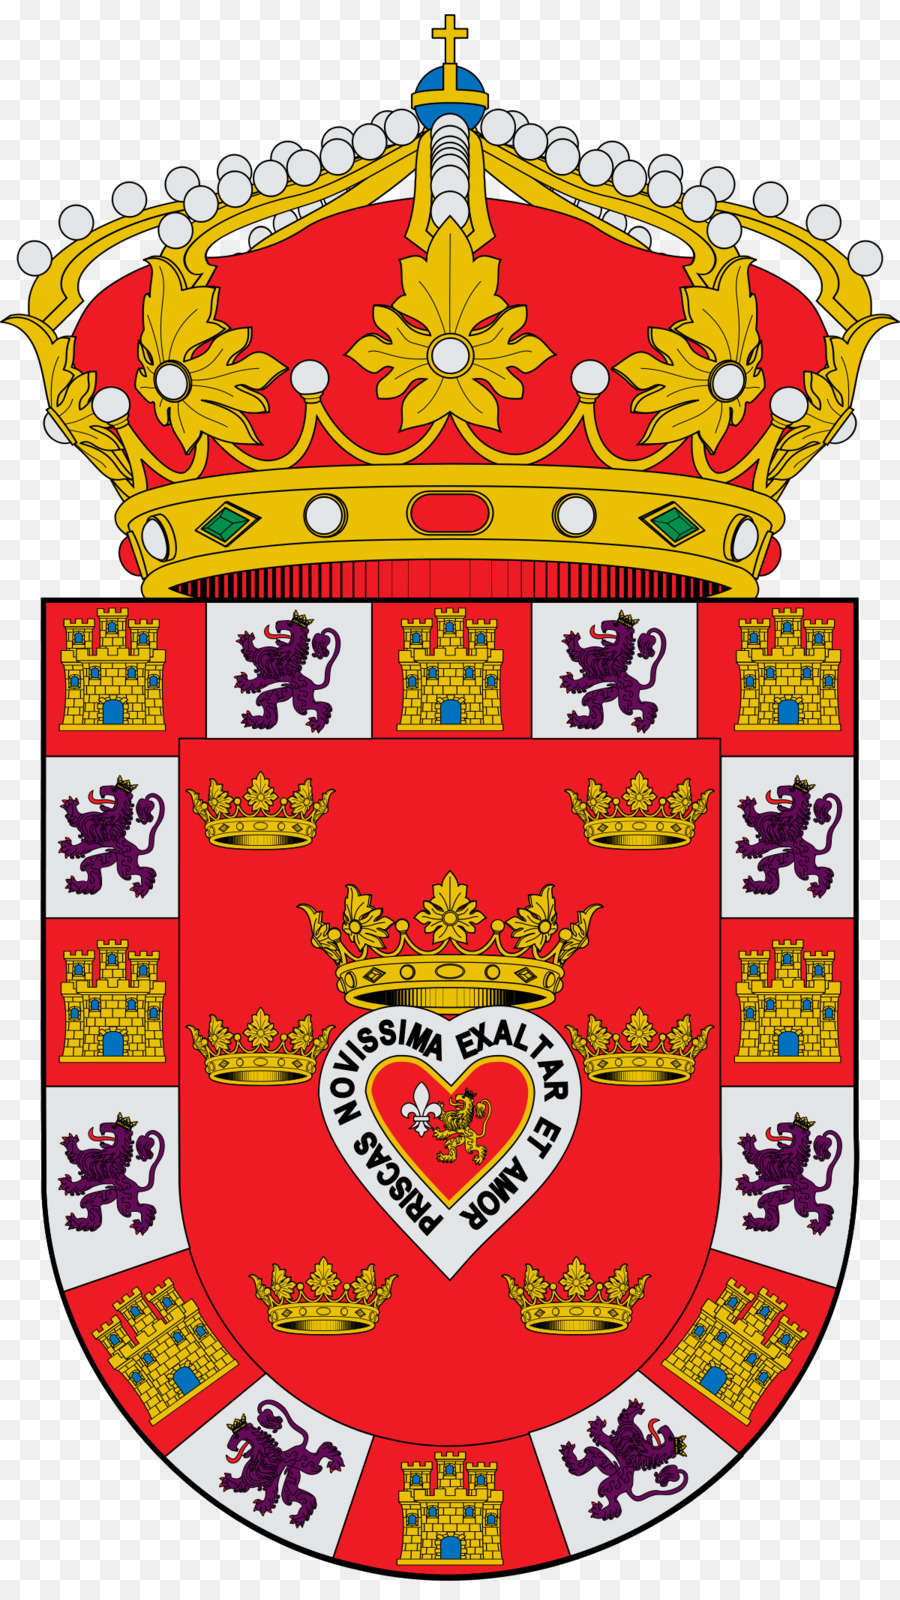 Huy hiệu của Madrid Gea de! huy chương Magaz de Pisuerga - những người khác